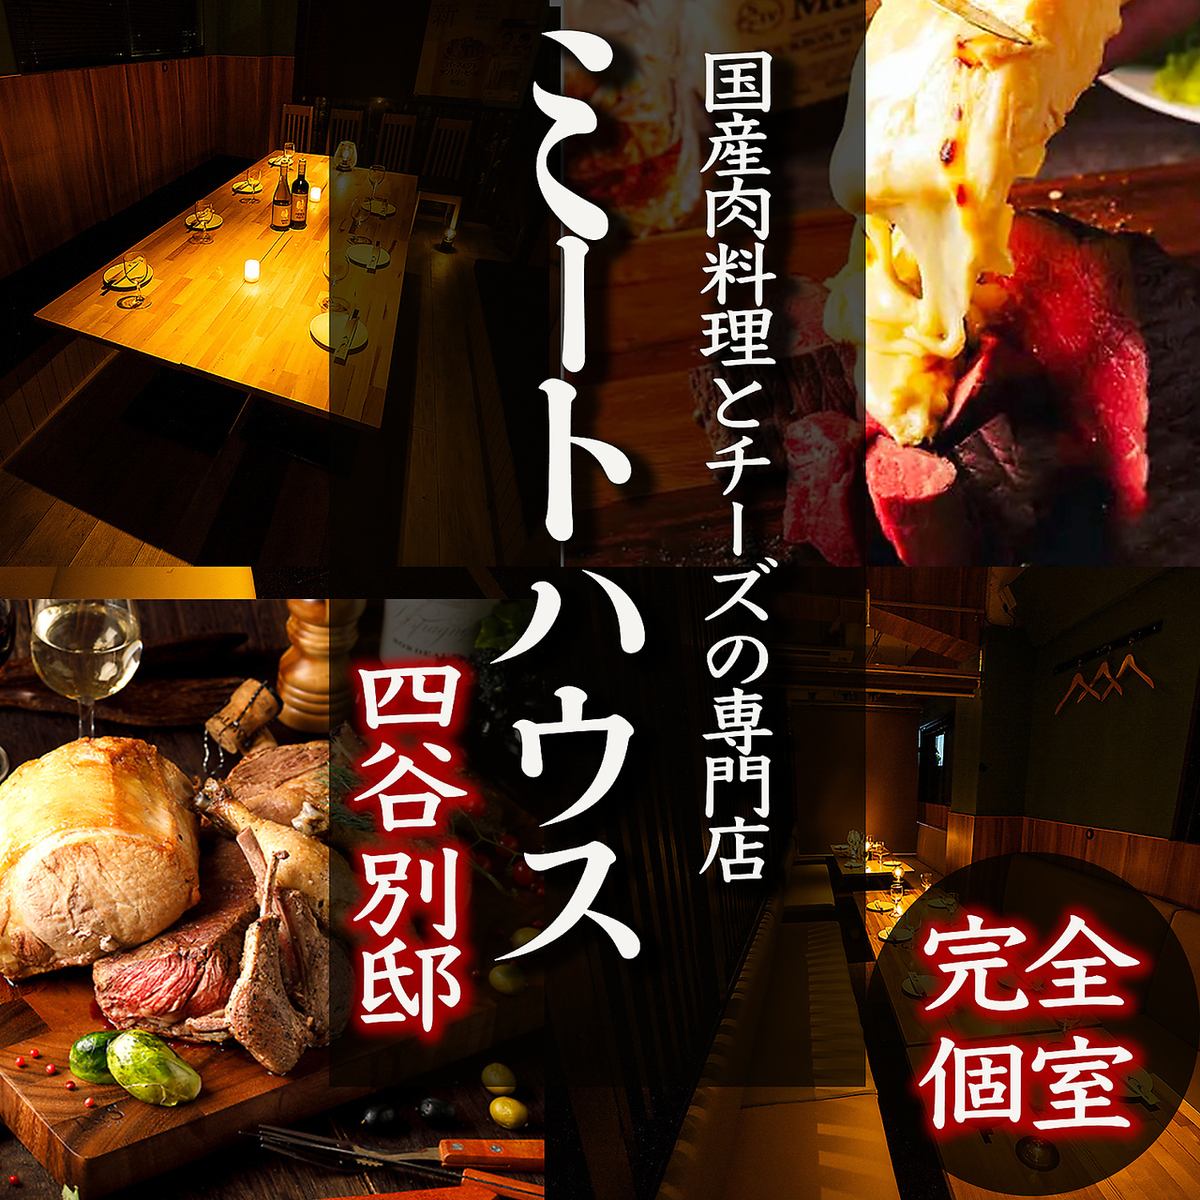 【四谷駅徒歩1分】肉寿司・ローストビーフなど話題の食べ飲み放題の個室肉バル♪